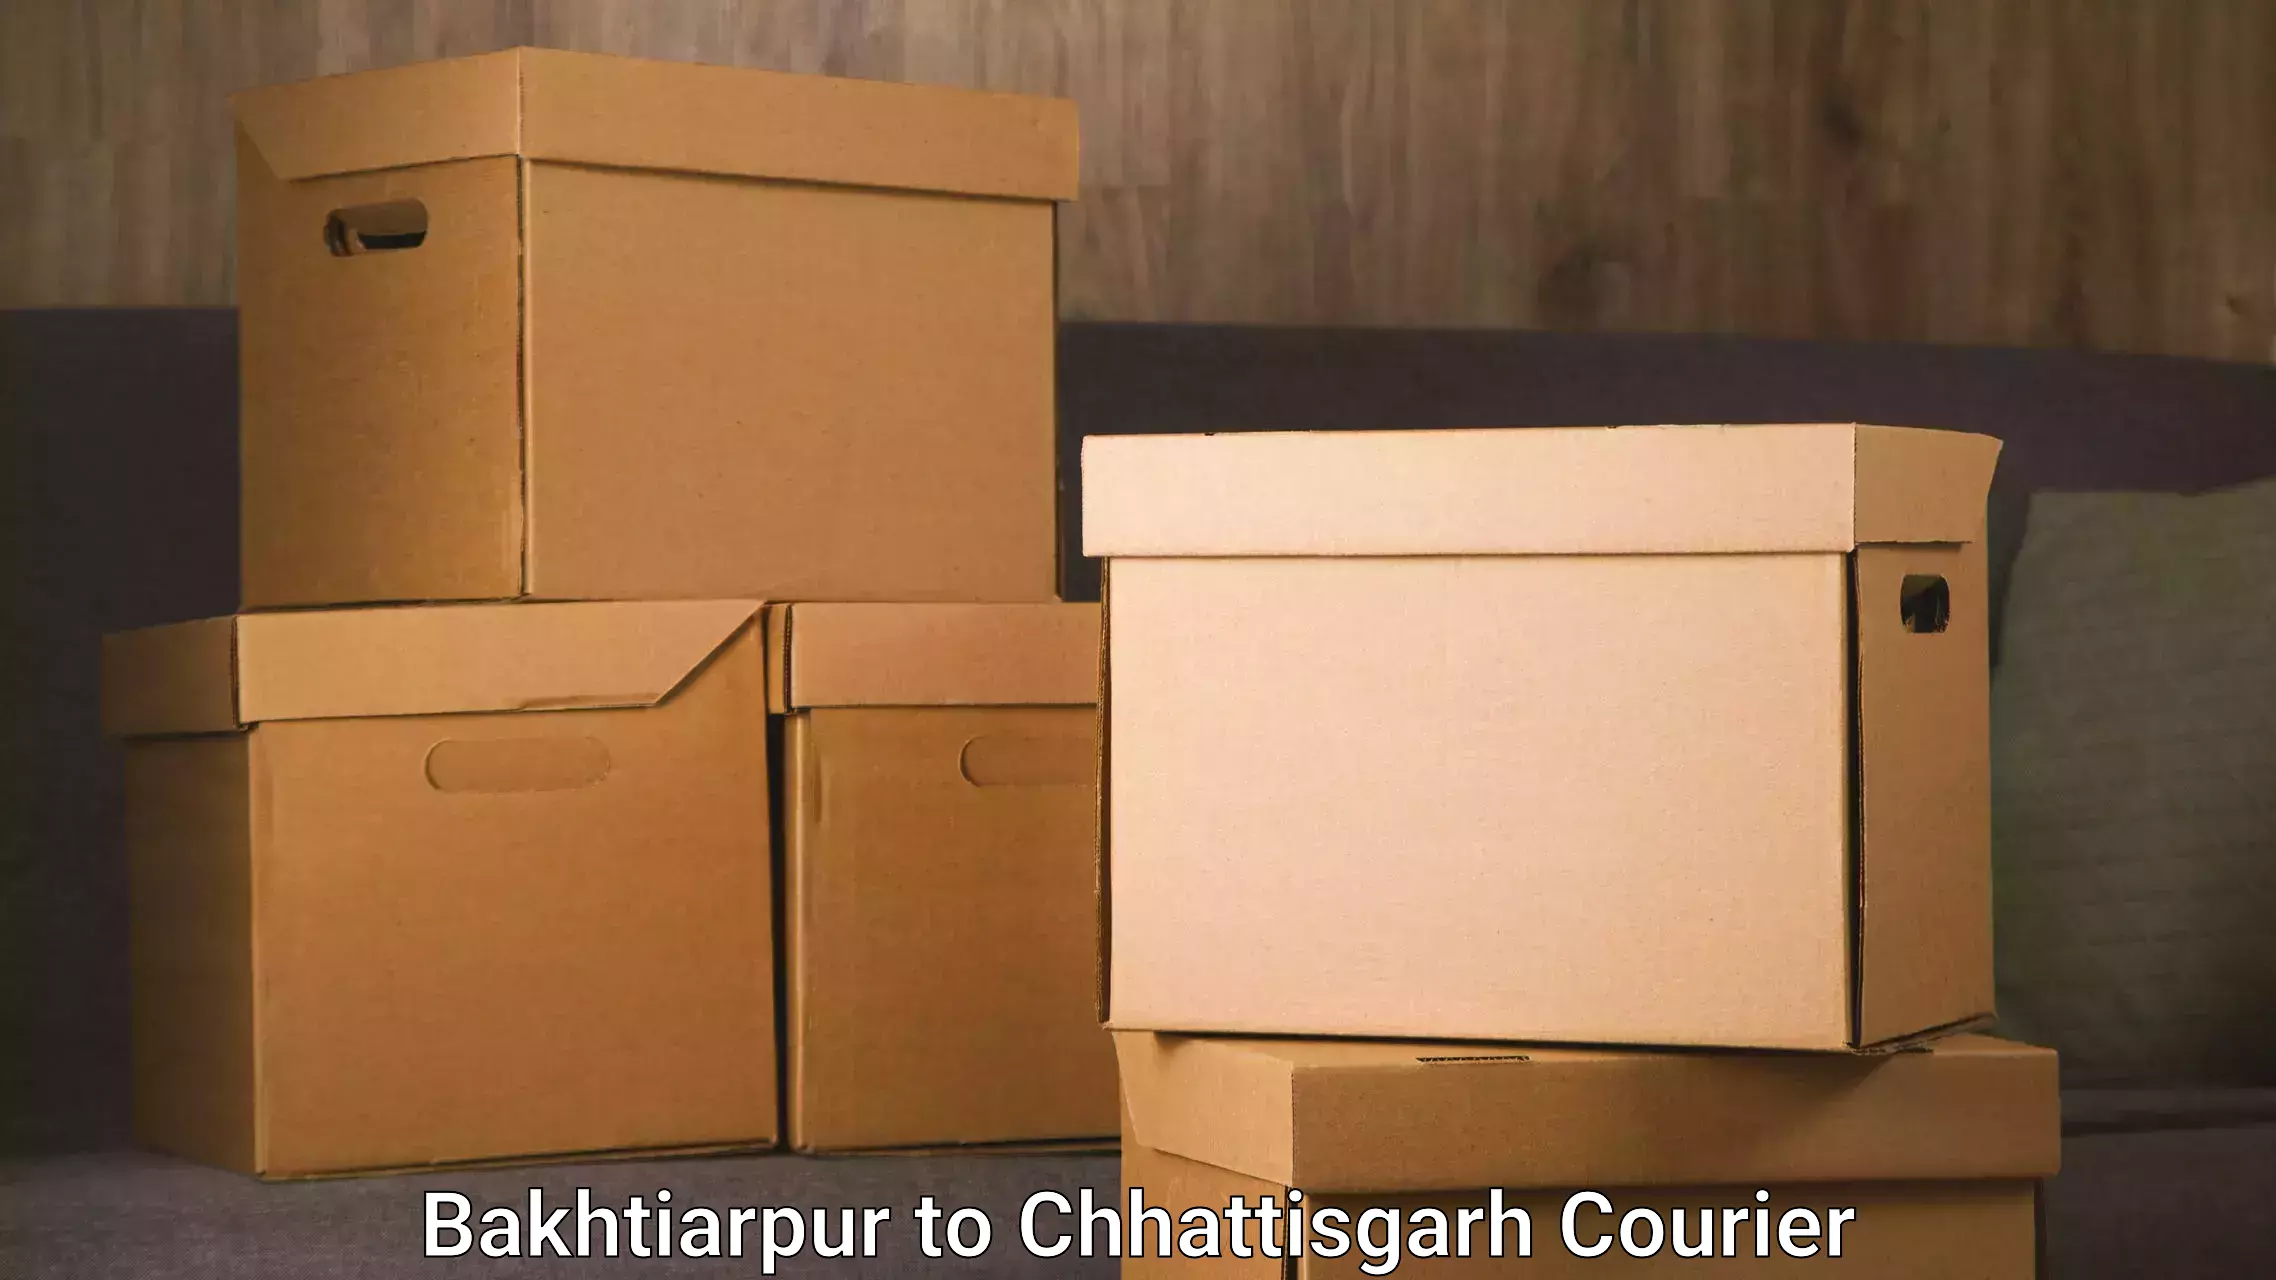 Full-service furniture transport in Bakhtiarpur to Raipur